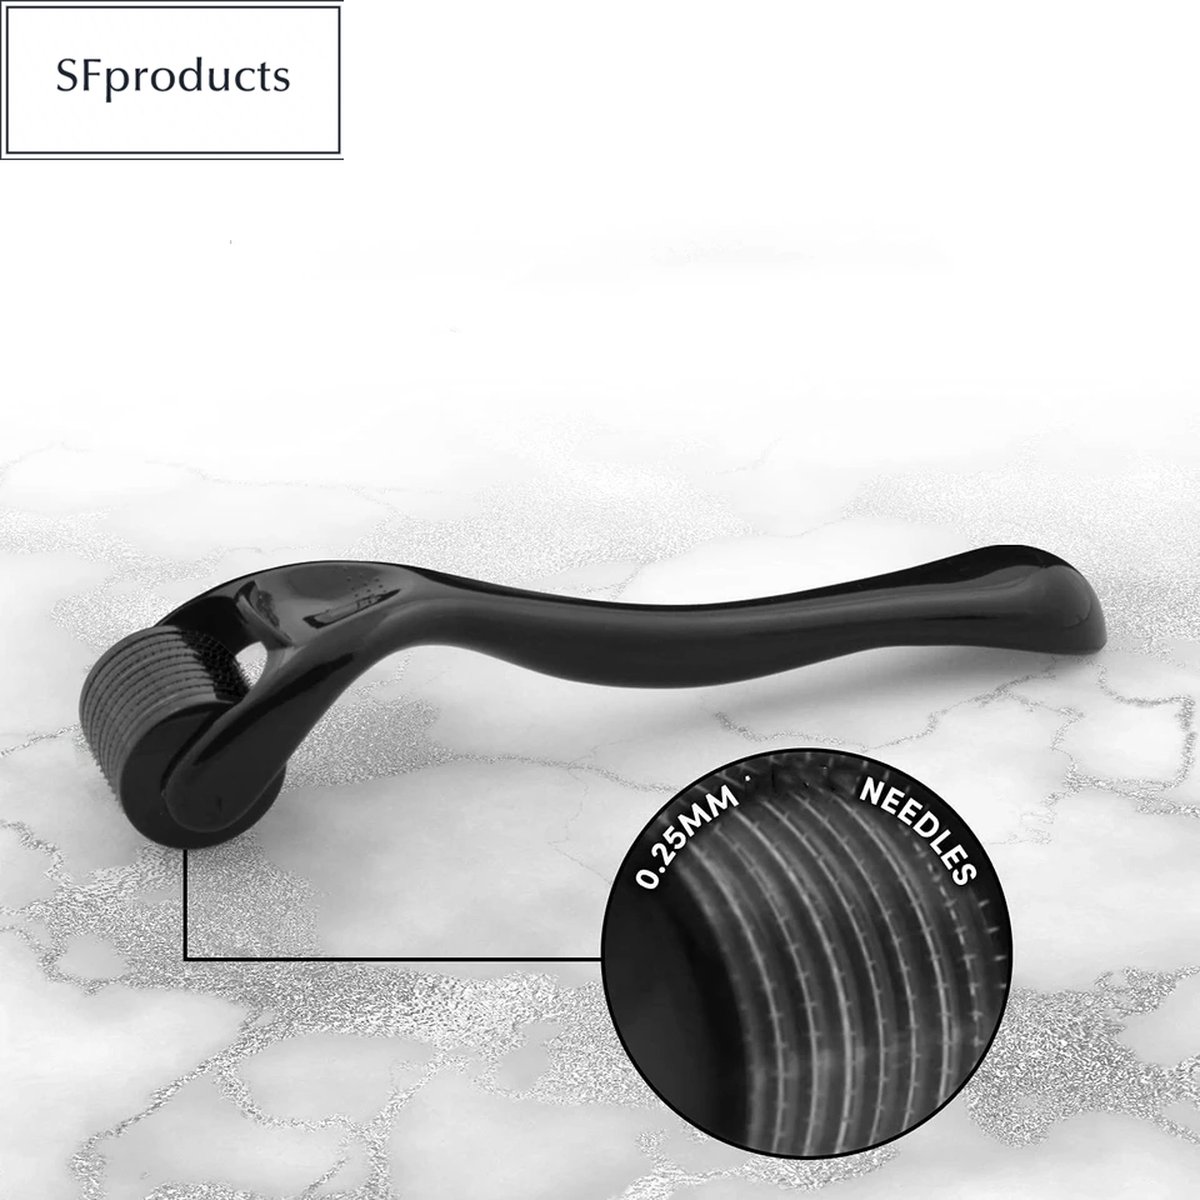 SFproducts baardroller/ dermaroller/0.3mm titanium naalden/ voor een mooie volle baard/stimuleert baardgroei